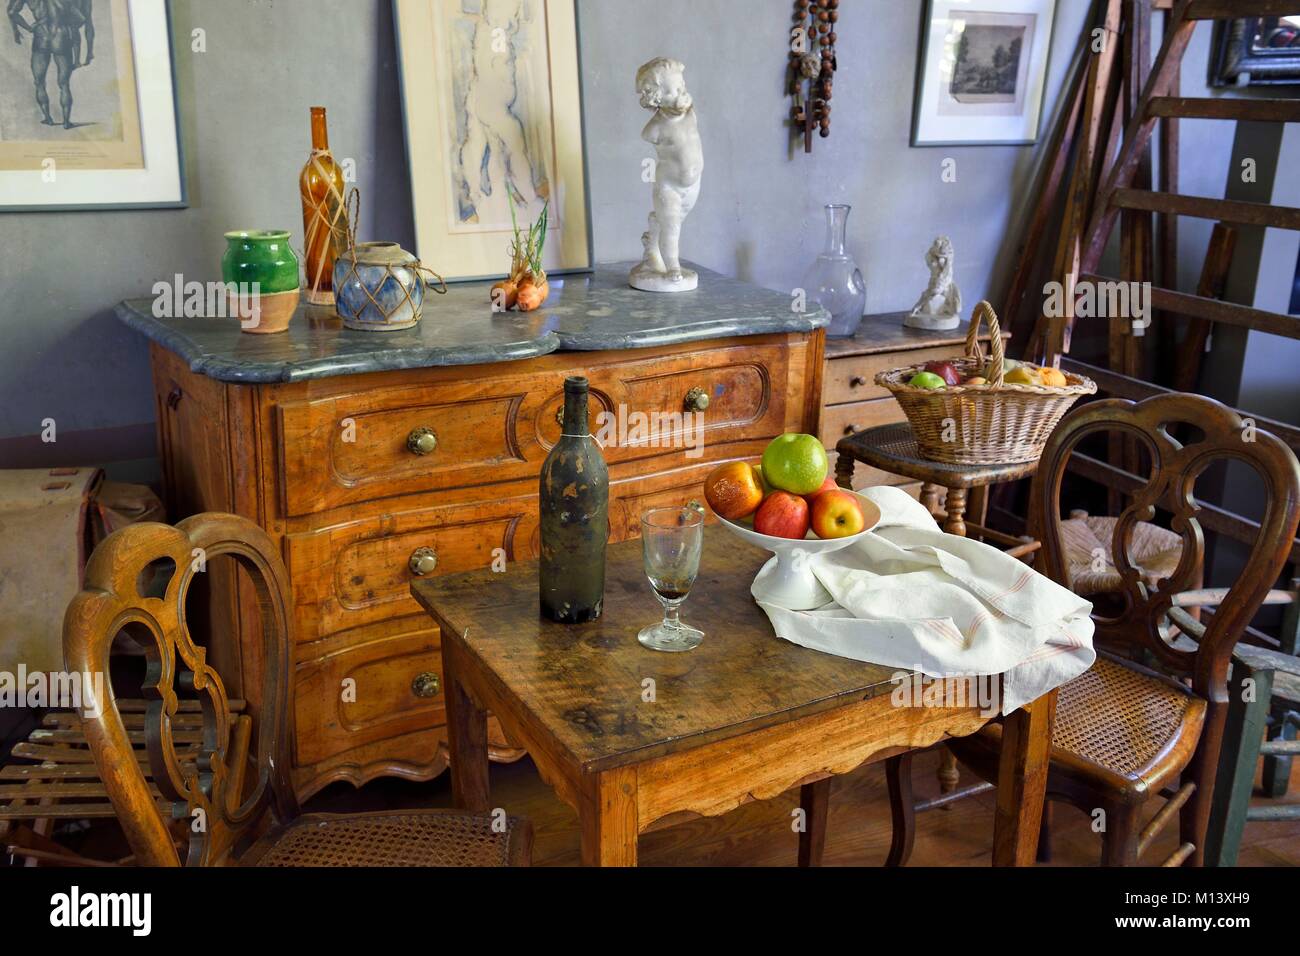 France, Bouches du Rhone, Aix en Provence, l'atelier de Paul Cézanne (atelier de Cézanne) sur la Lauves&# x2019 ; Hill avec le mobilier et les accessoires qu'il a utilisé, mention obligatoire Banque D'Images